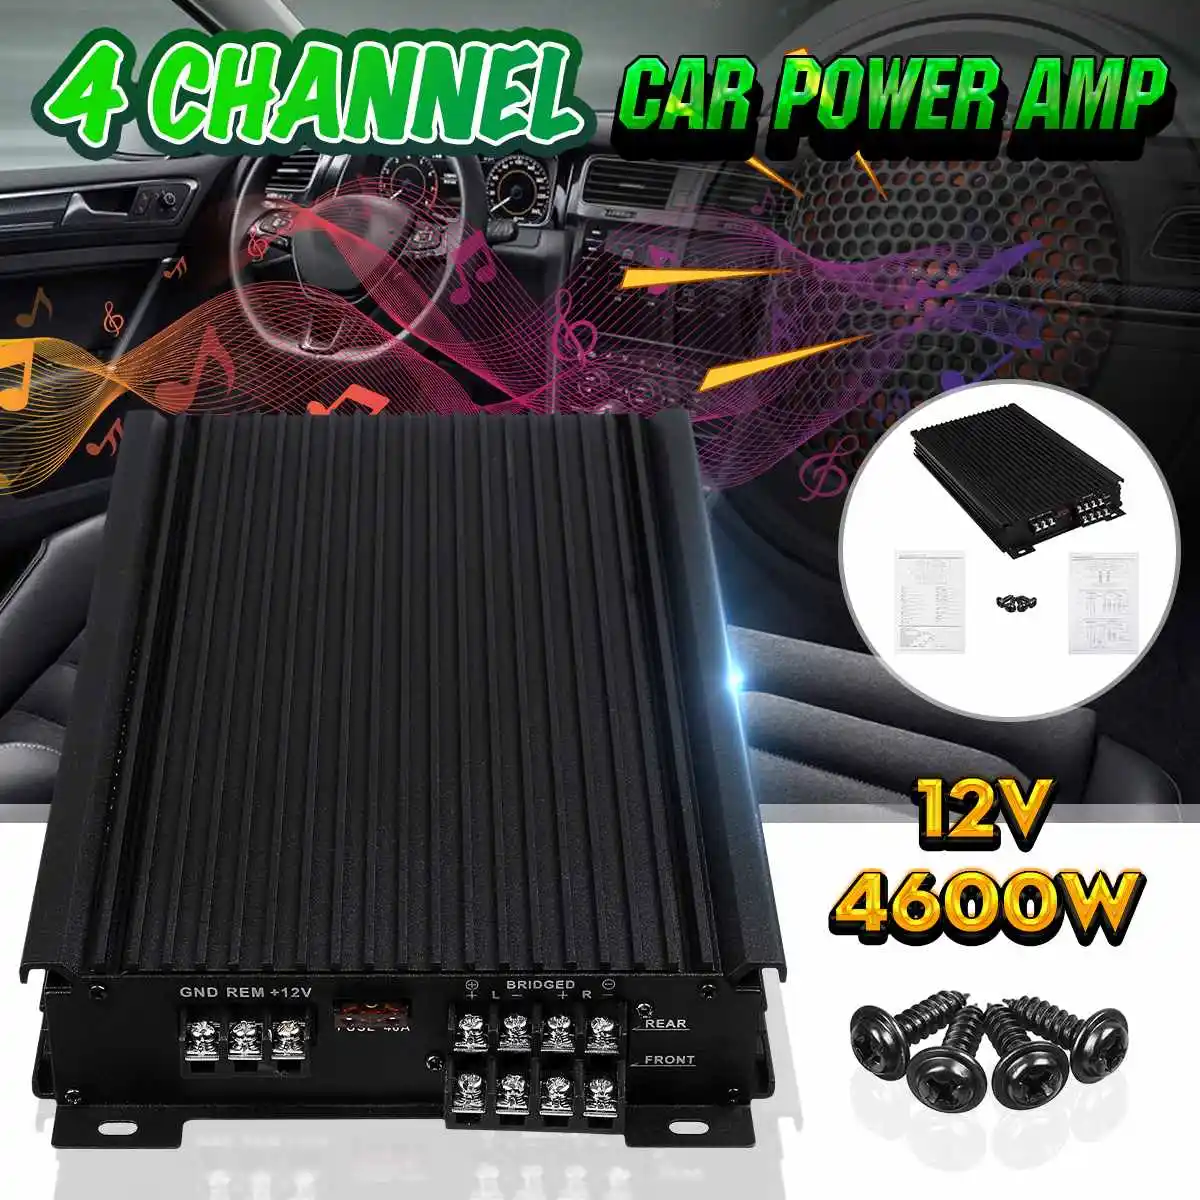 

4600W Car Home Audio Power Amplifier 4 Channel 12V Car Digital Amplifer Car Audio Amplifier for Cars Amplifier Subwoofer 12V